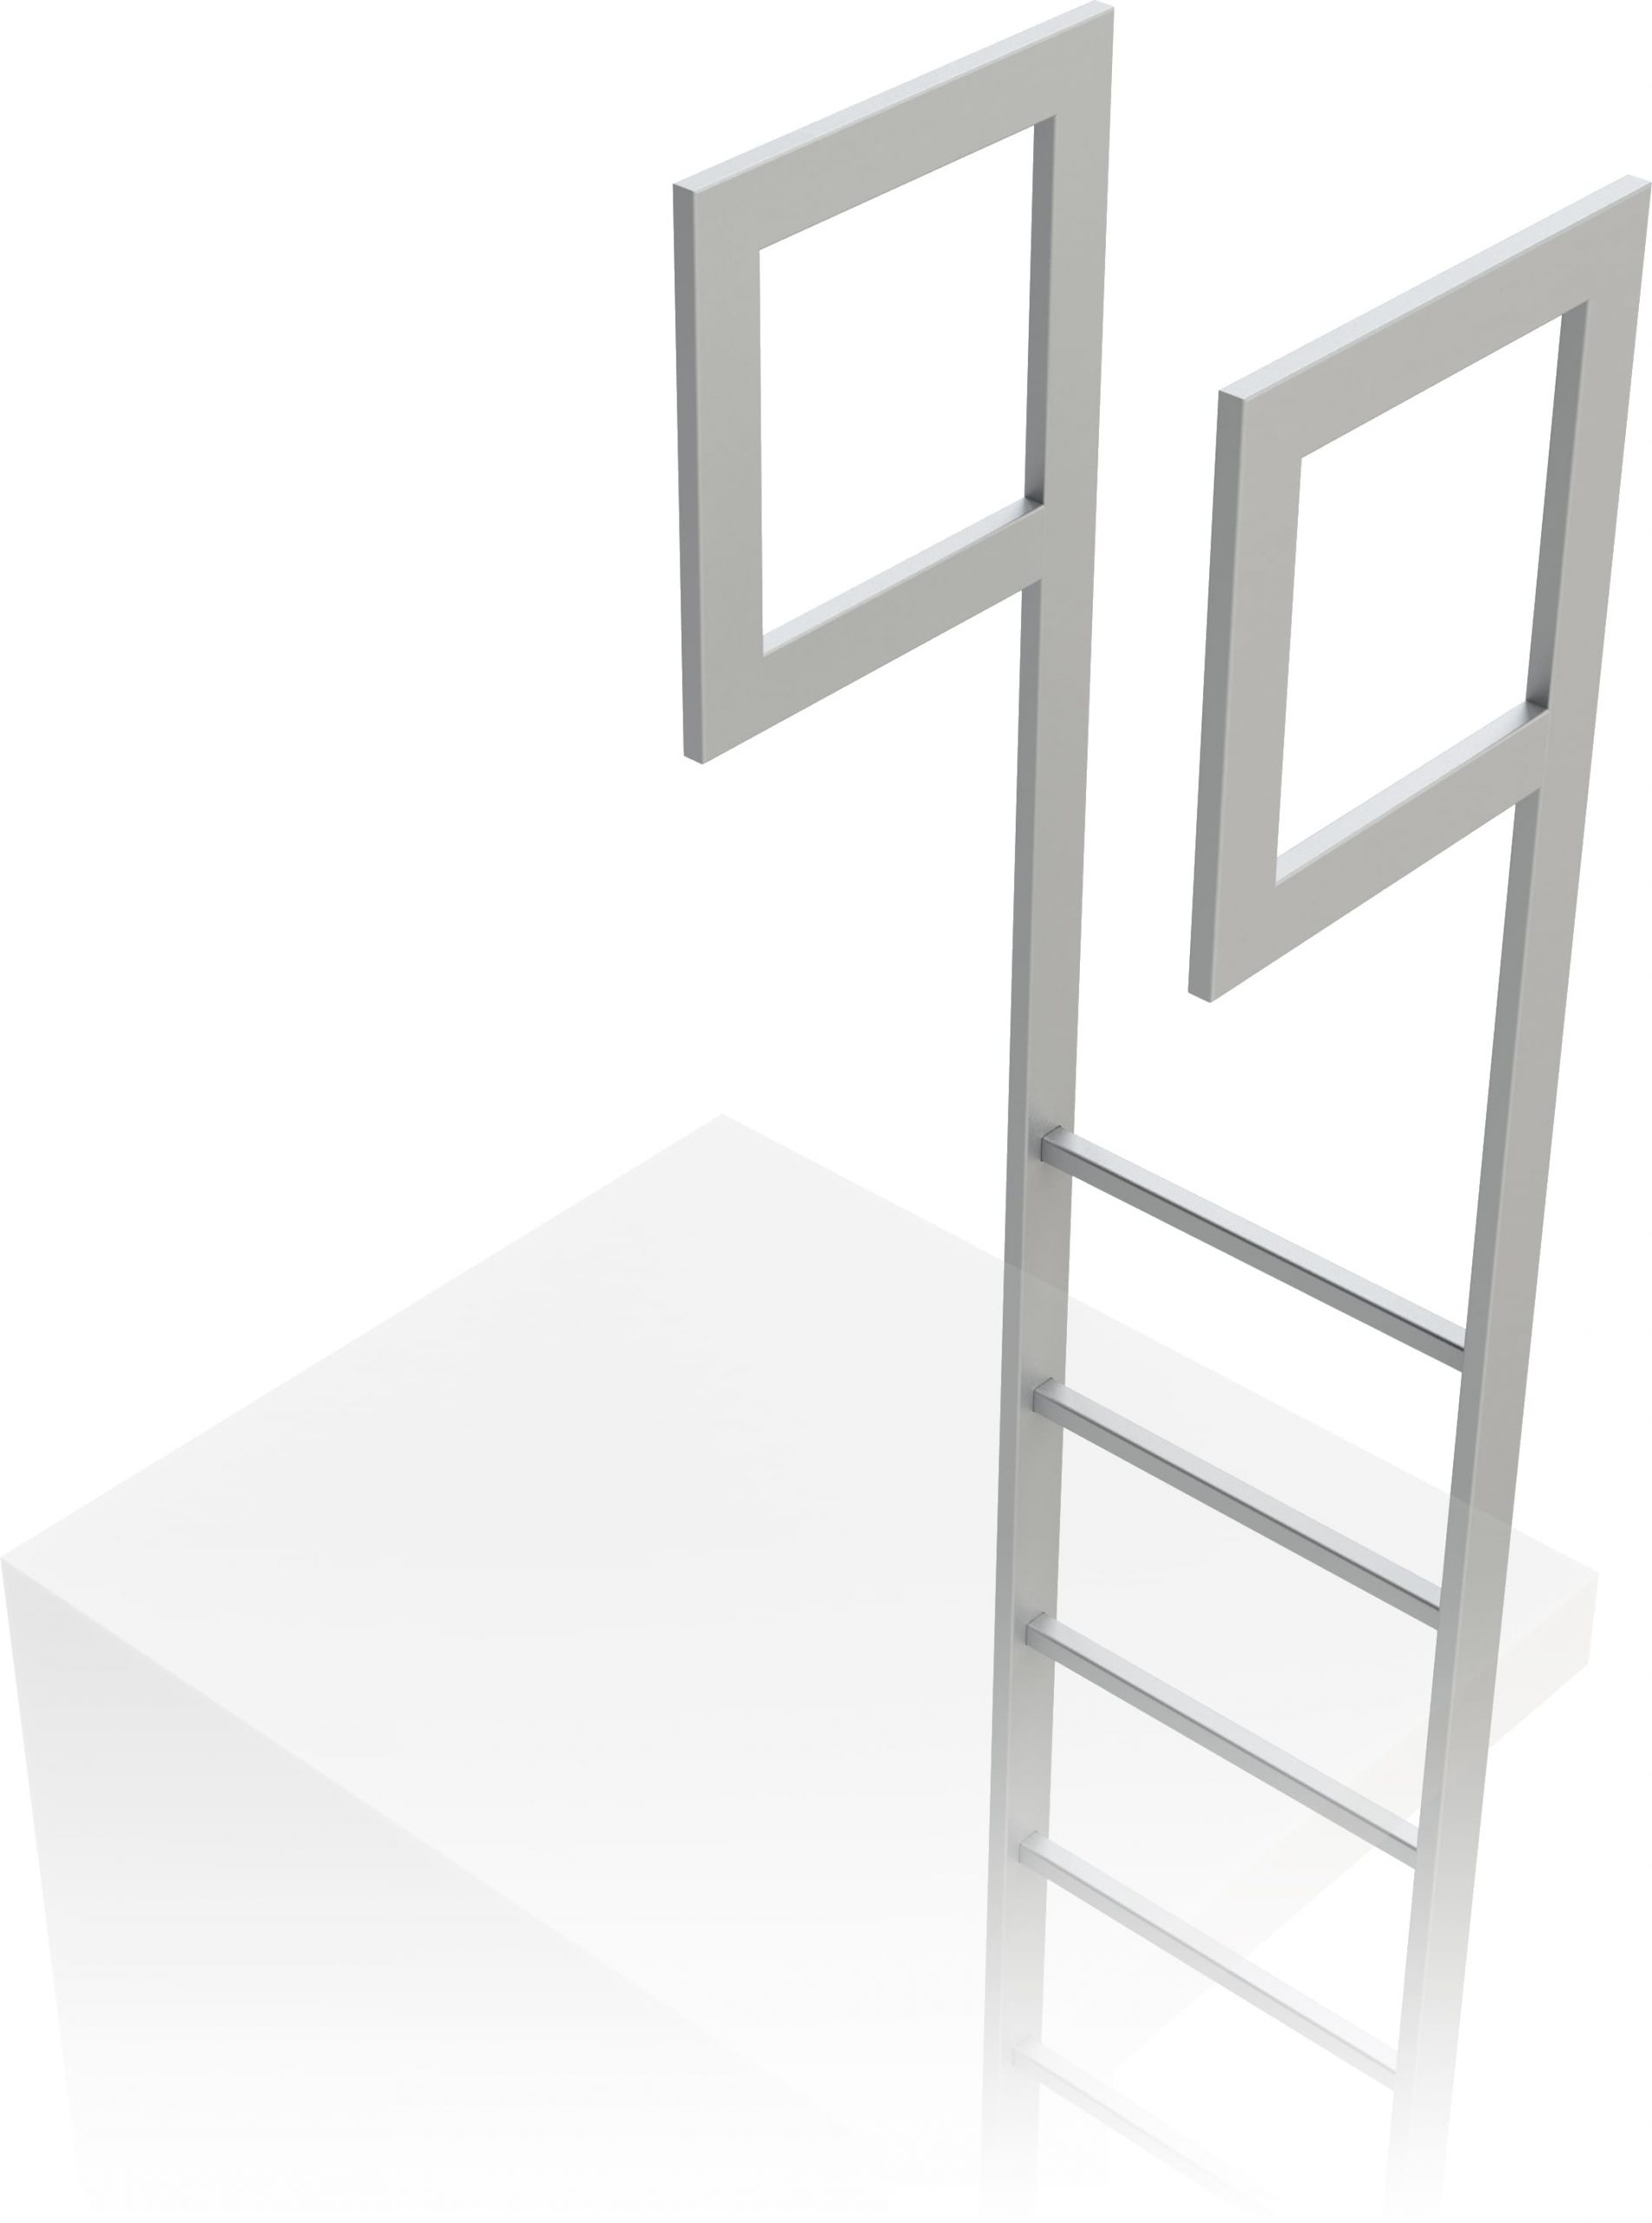 predĺženie stojín na výstupovom rebríku na budove